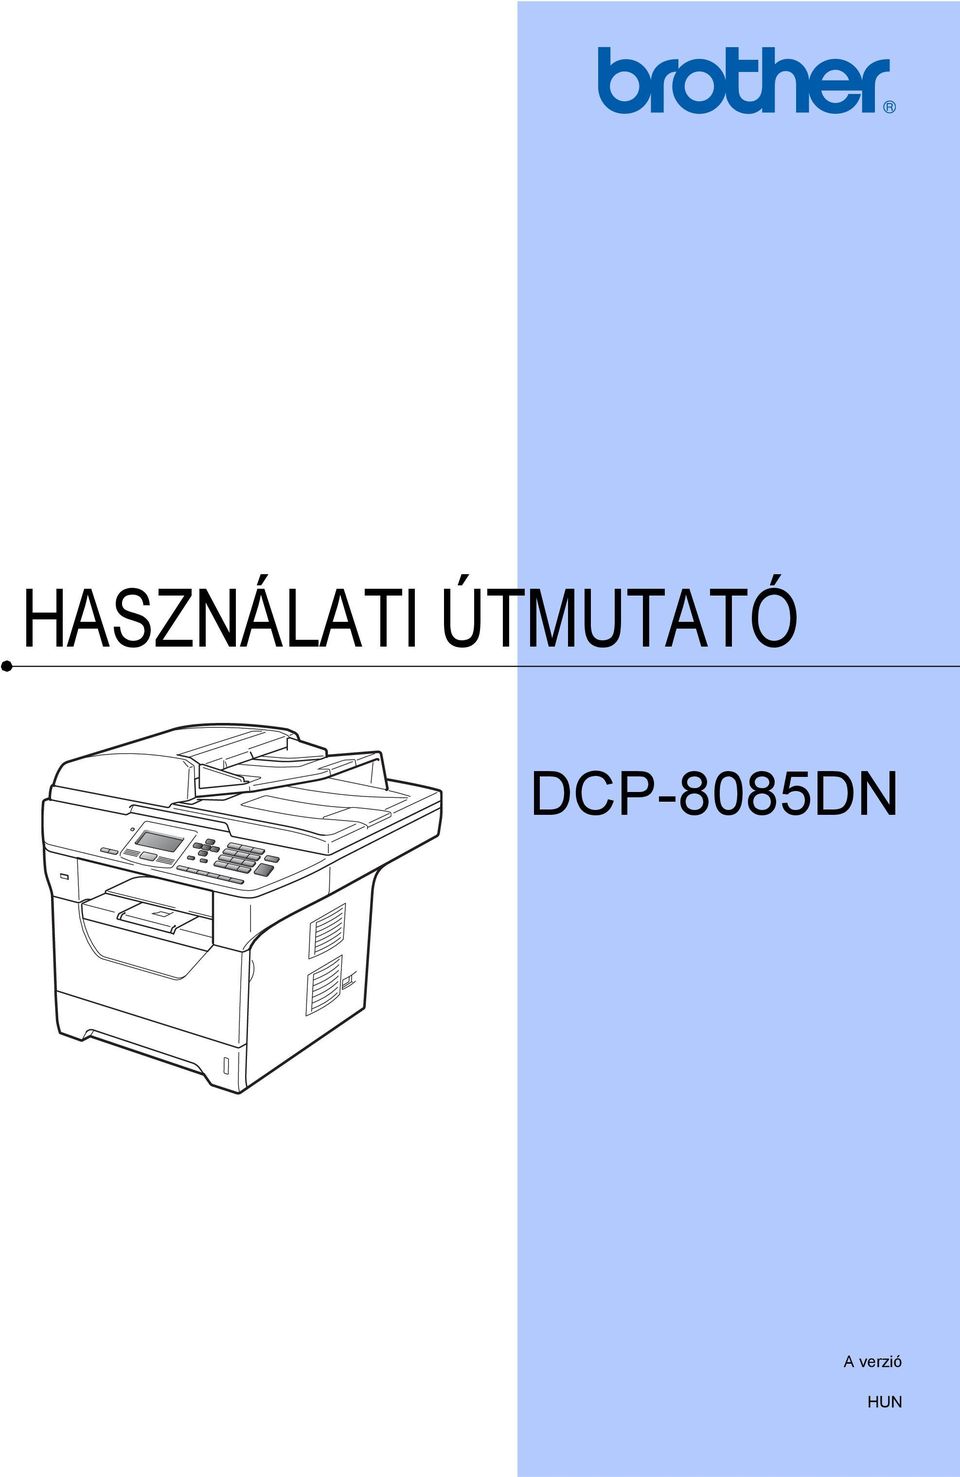 DCP-8085DN